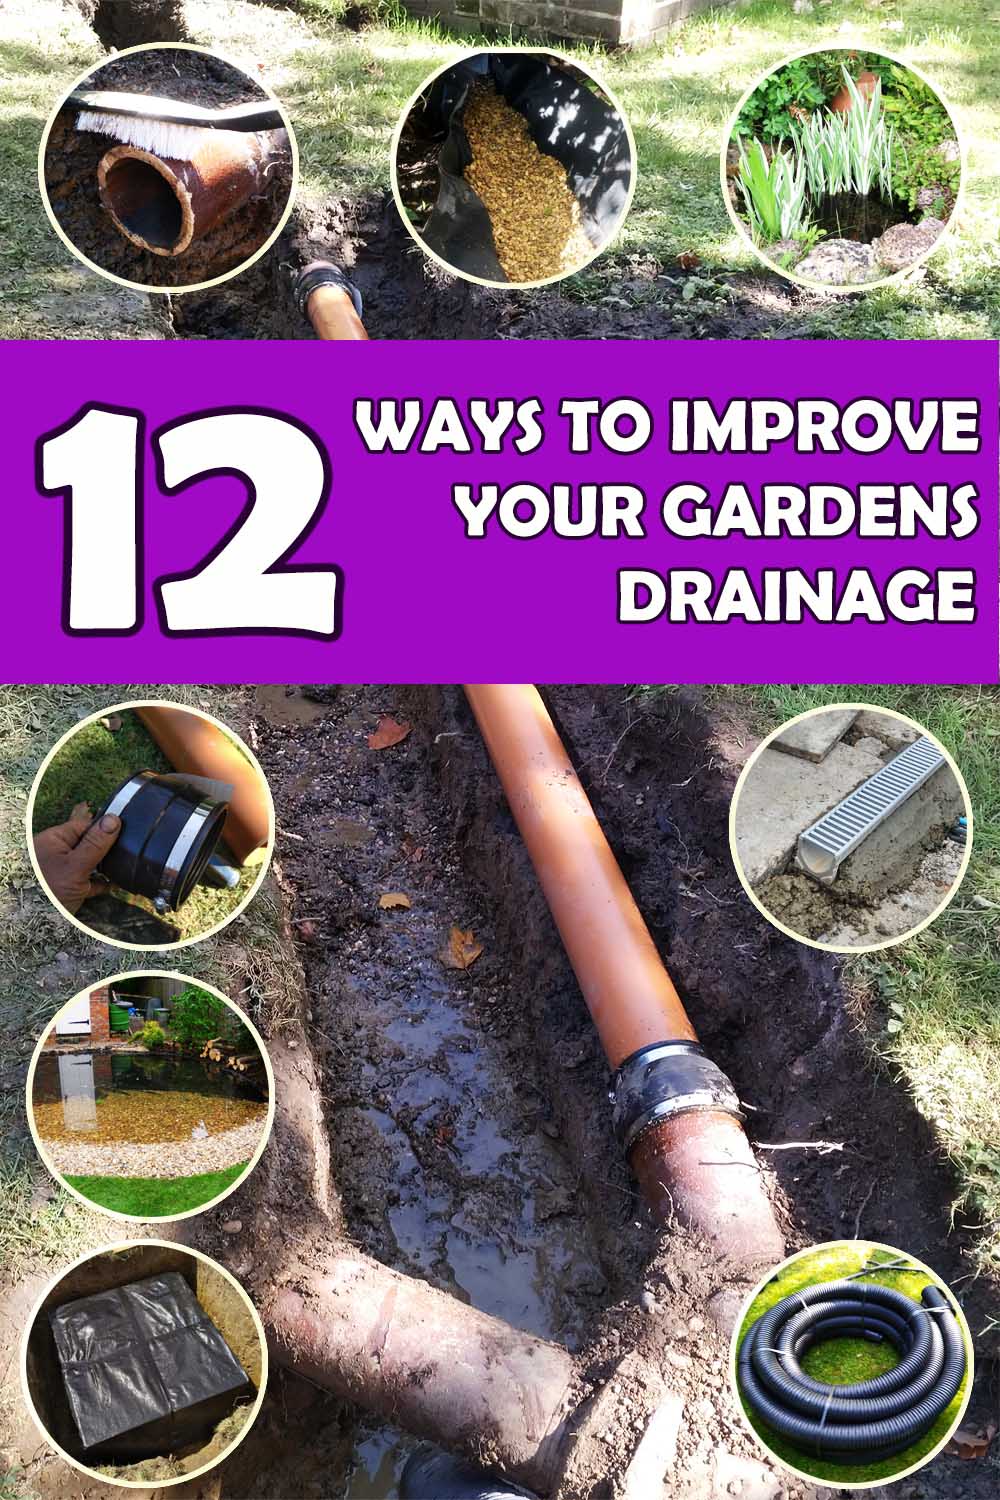 ways to drain your garden